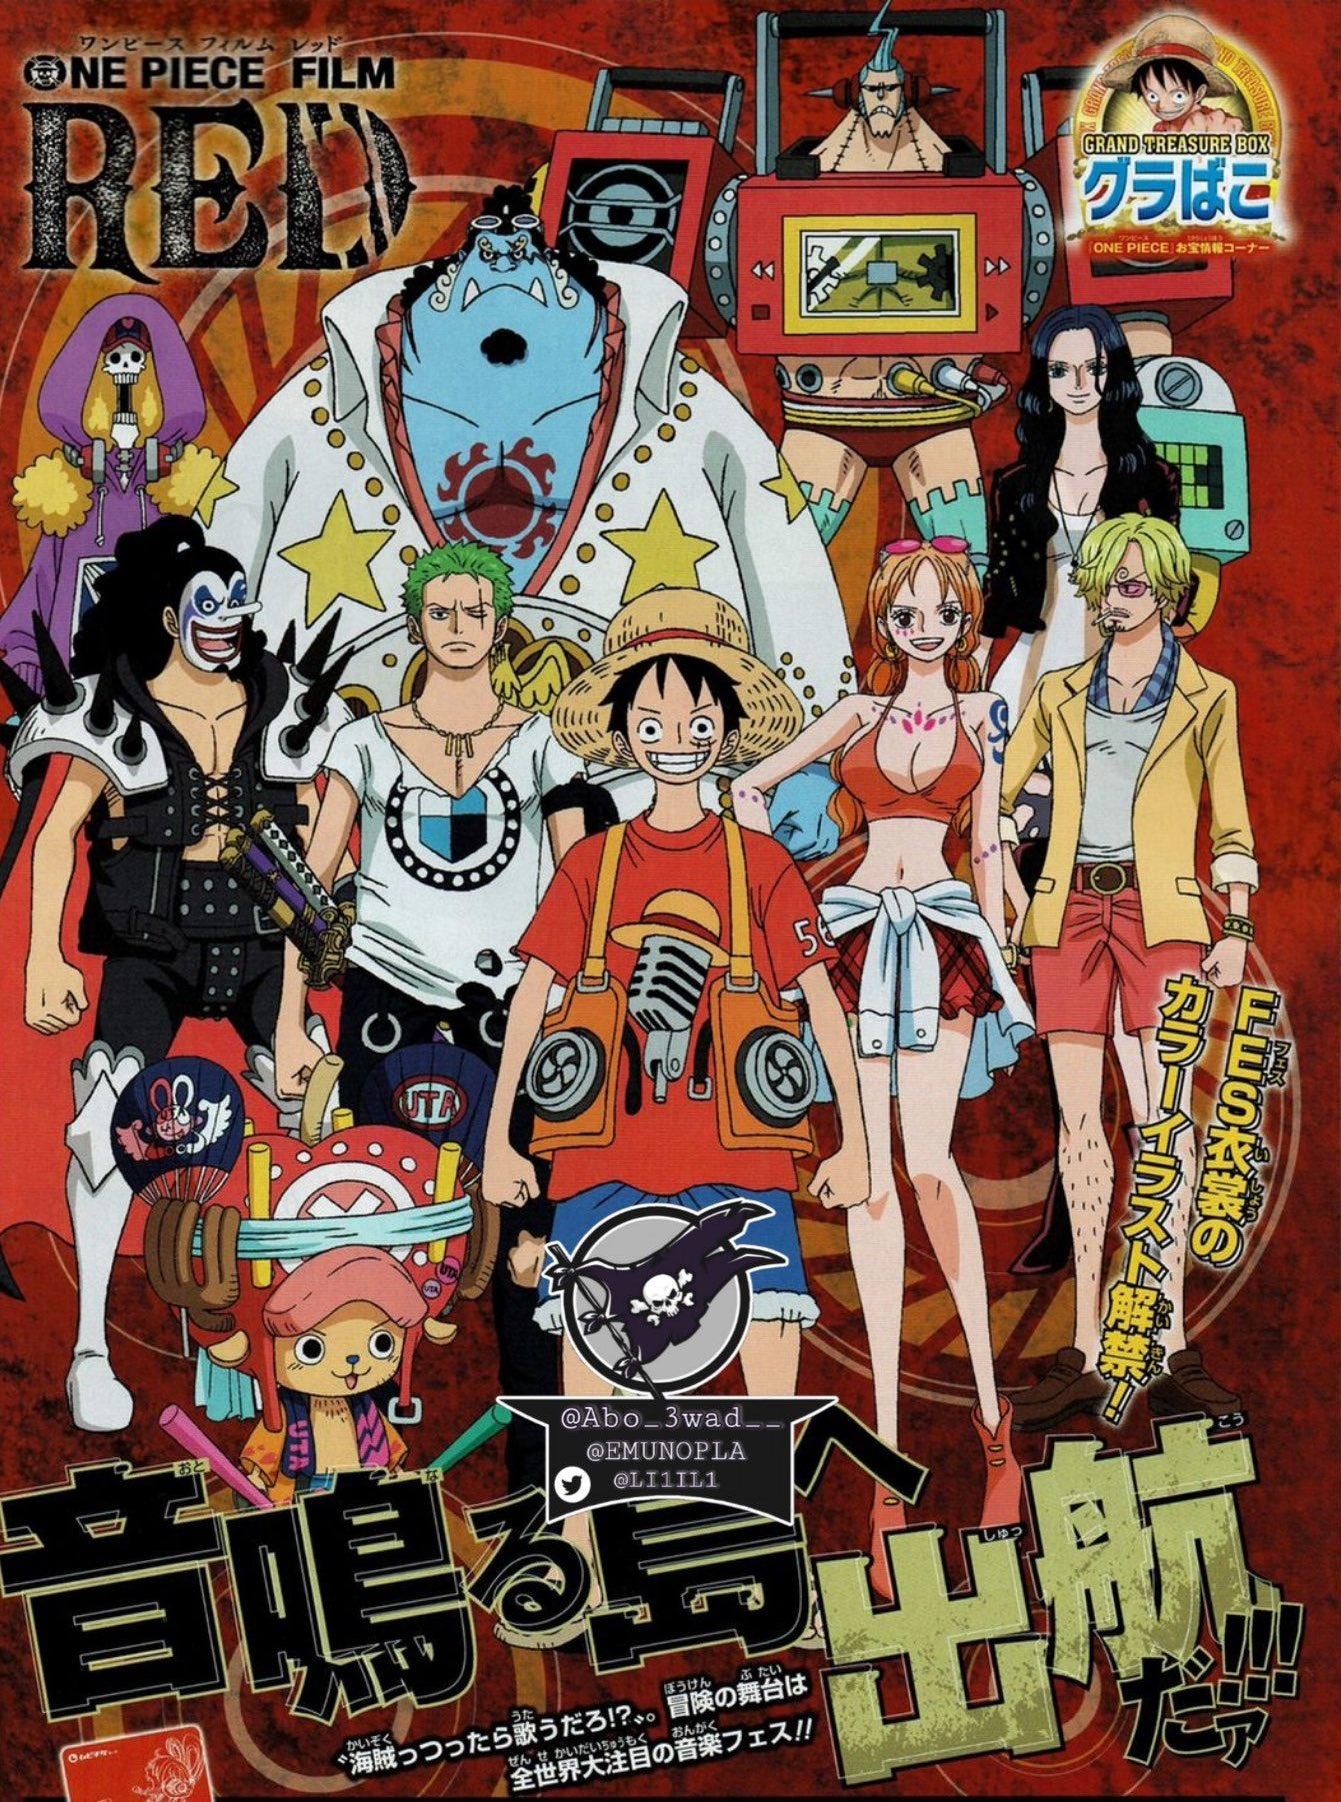 Chapéu One Piece Luffy Cosplay - Produtos criativos de filmes